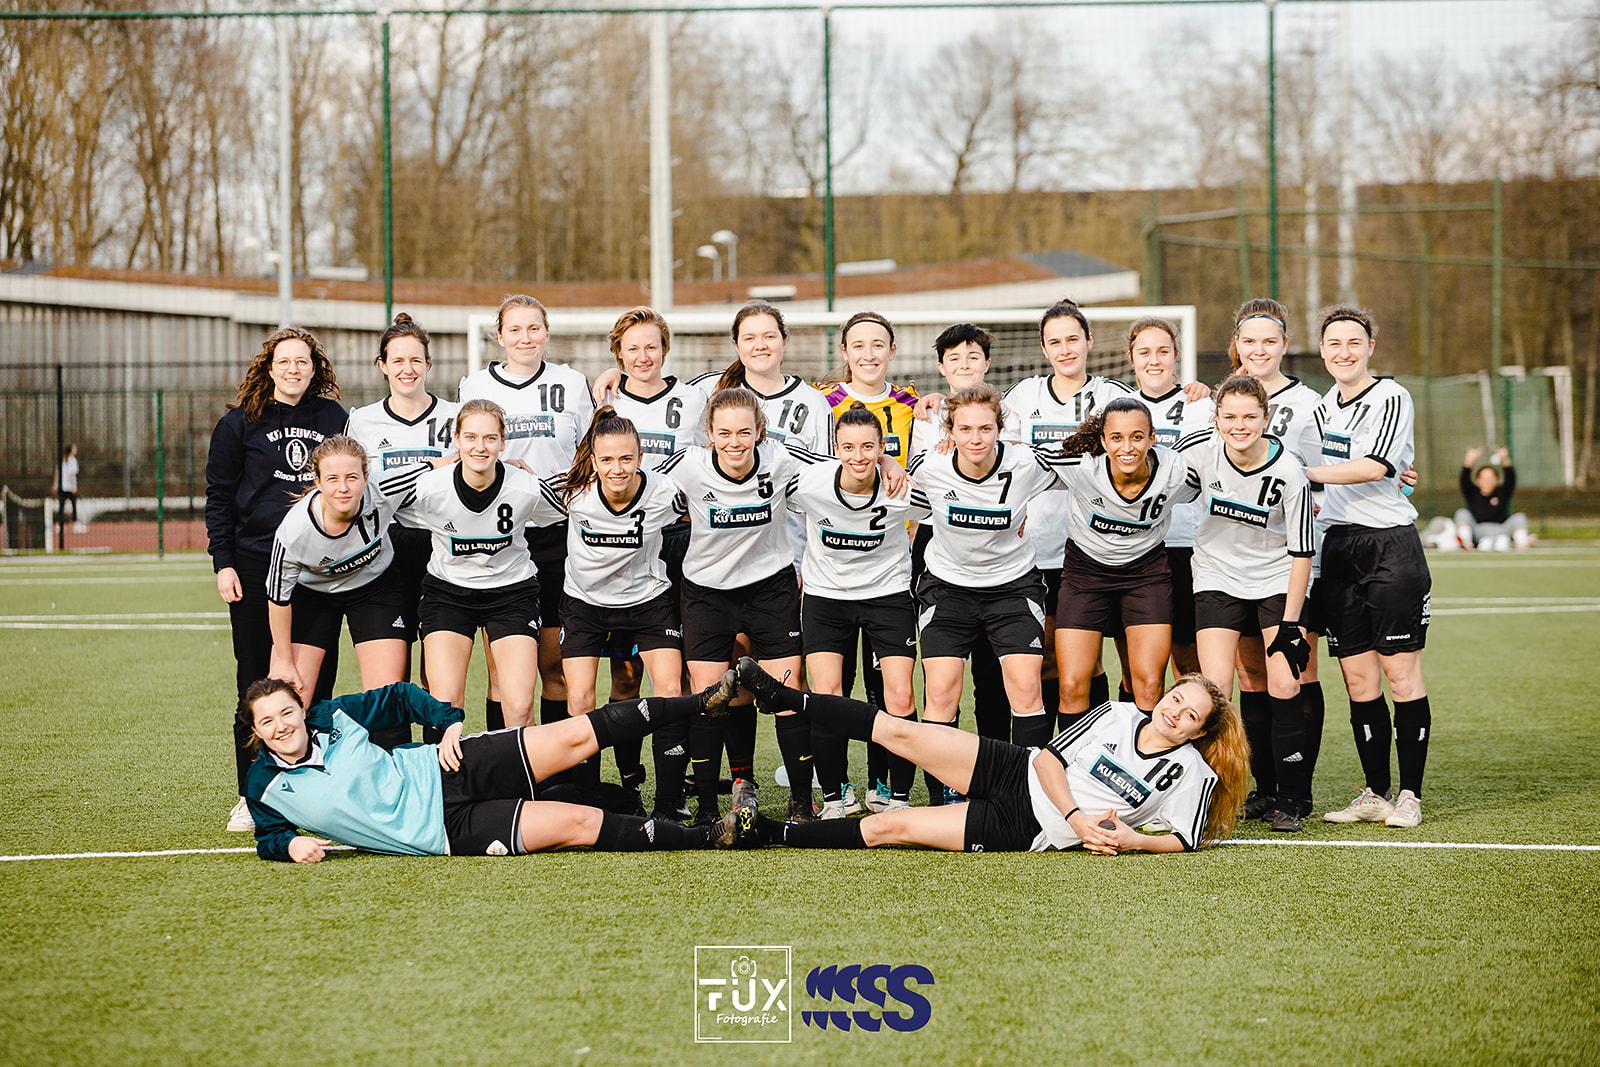 Associatie KU Leuven football ladies